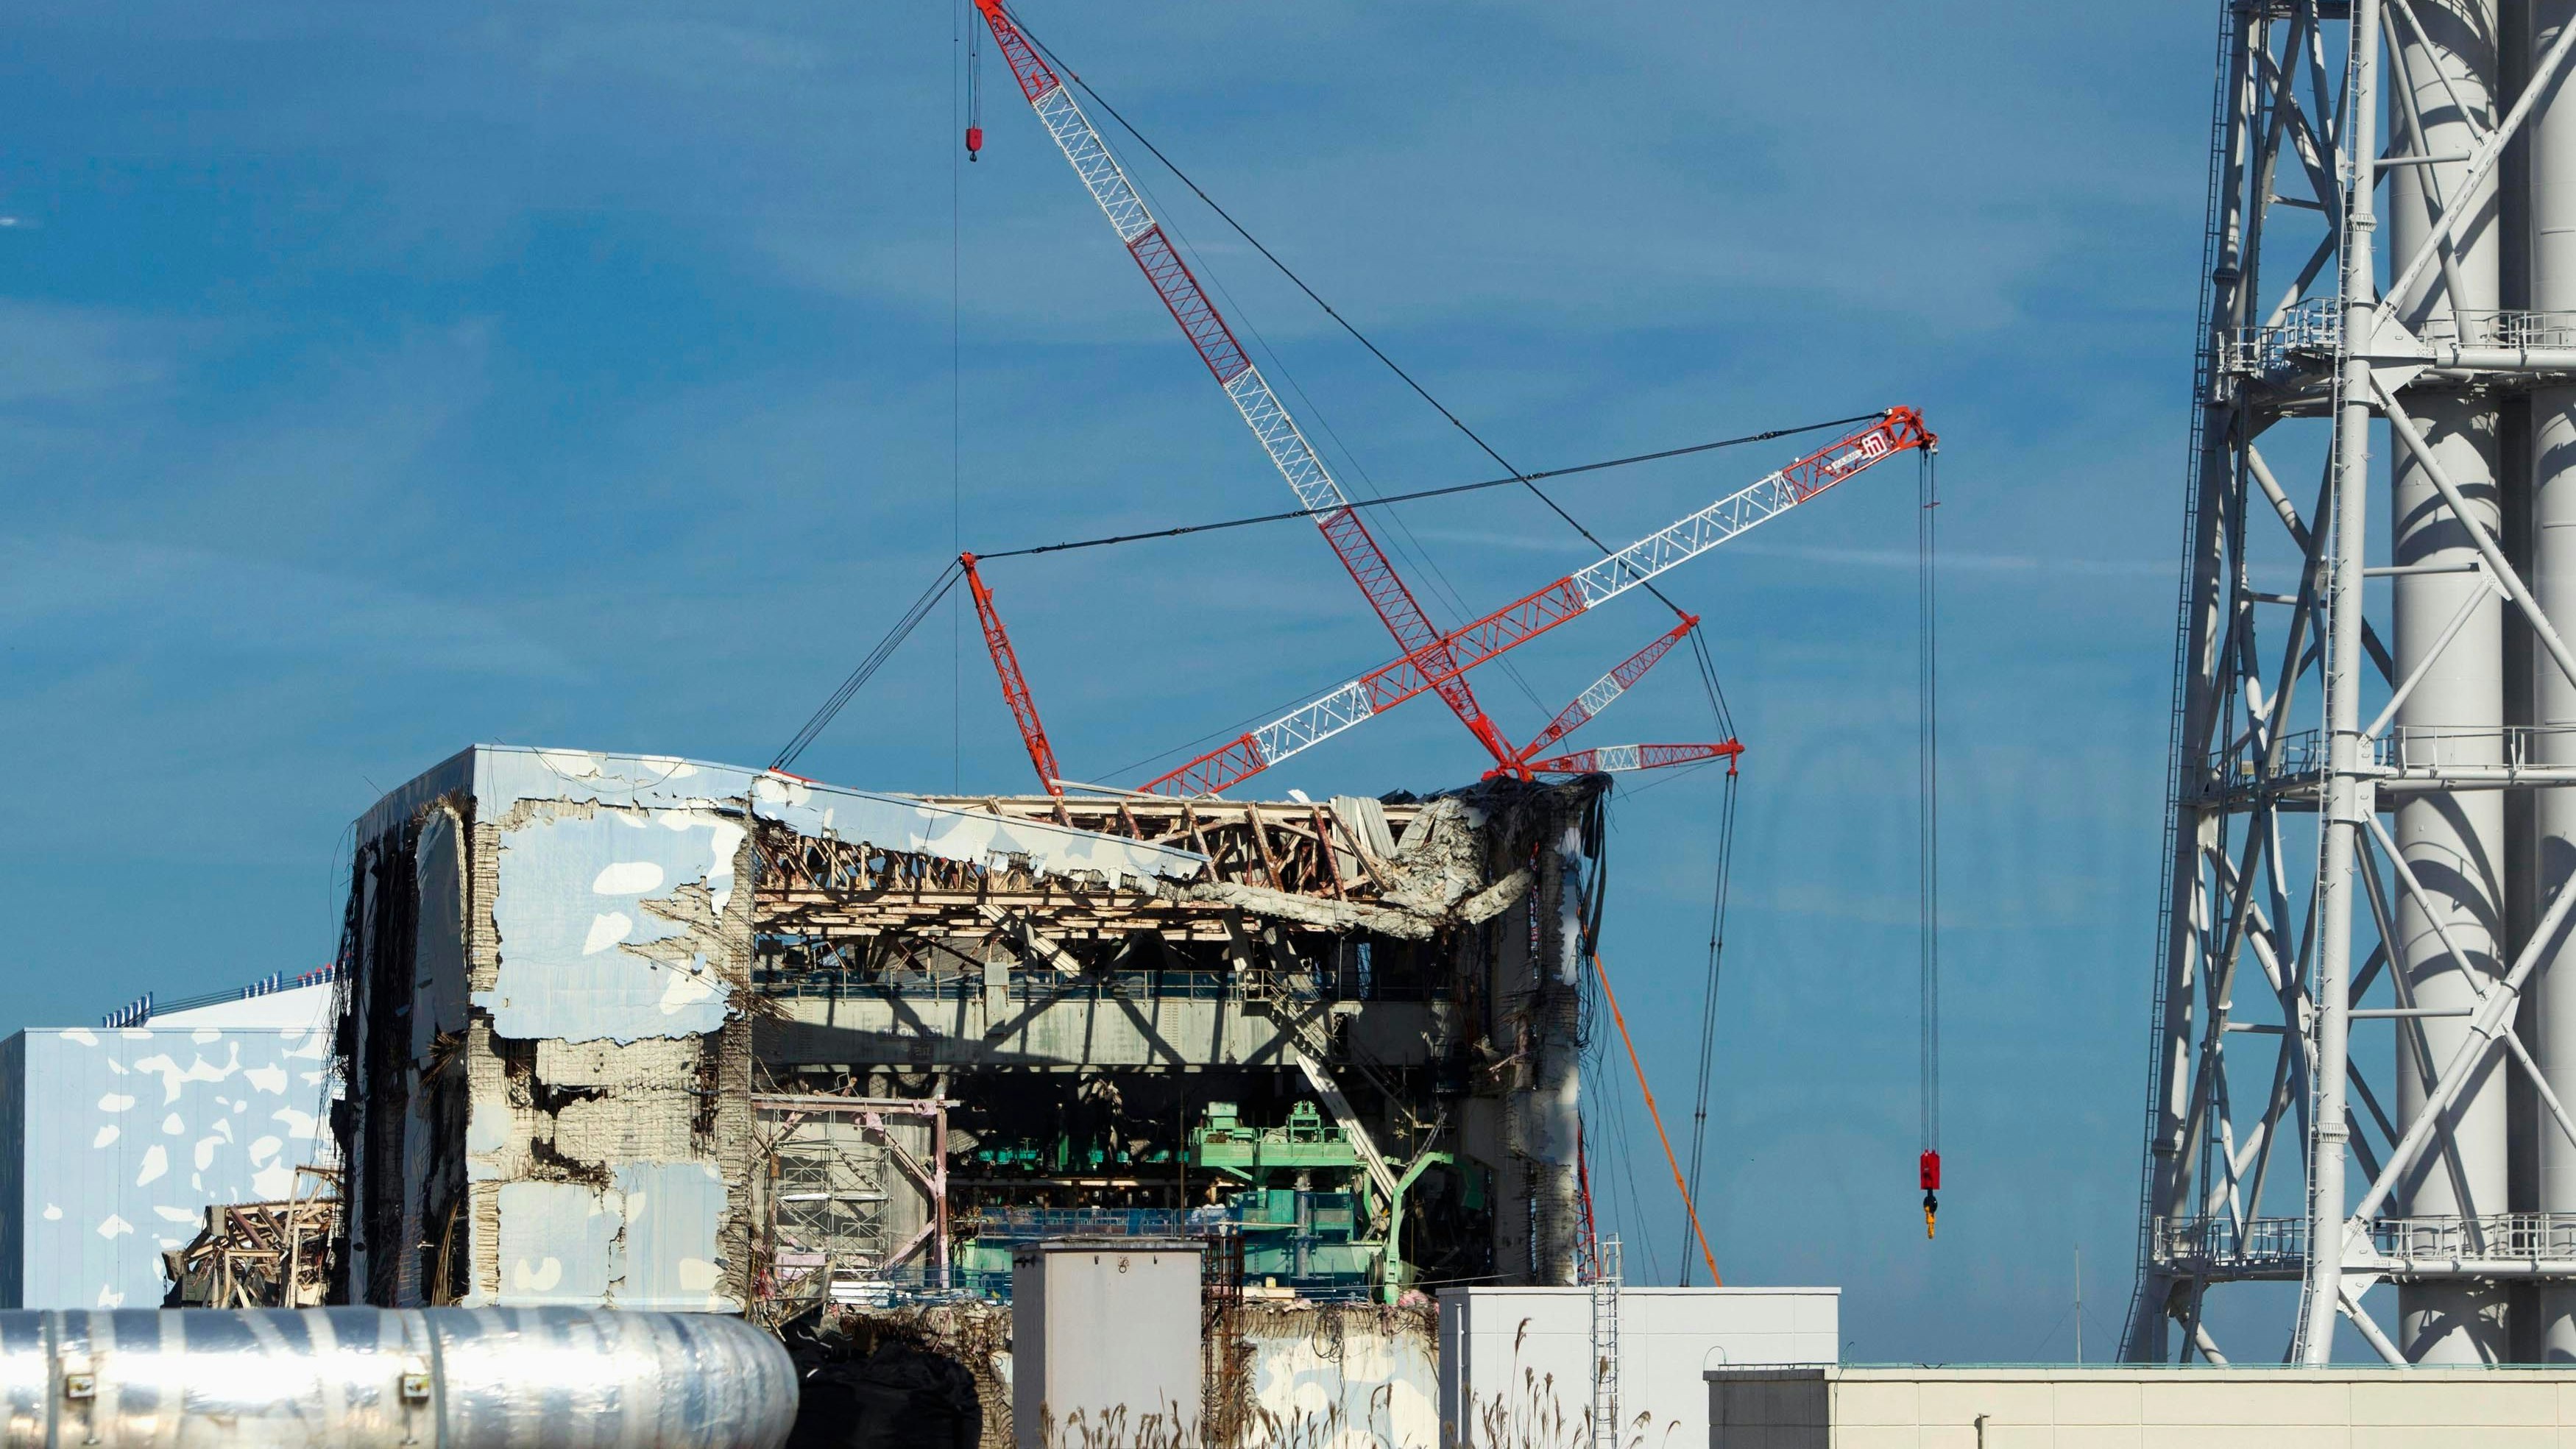 Das Atomkraftwerk Fukushima Daiichi, das am 11. März 2011 zerstört wurde und eine Umweltkatastrophe auslöste